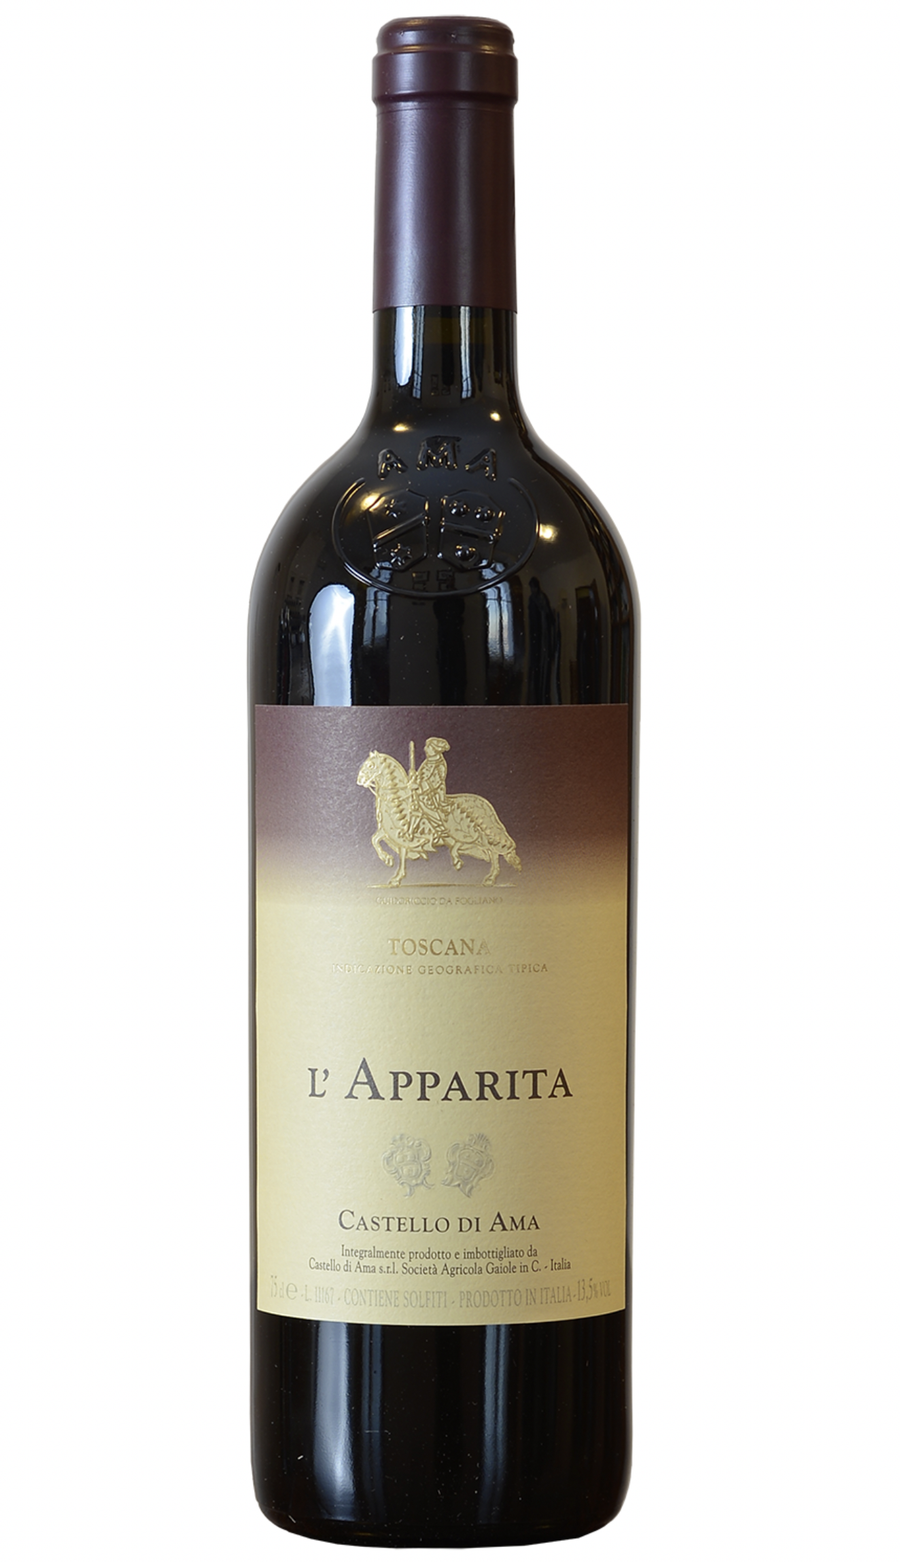 Castello di Ama L'Apparita 2010 - 2021 winery release